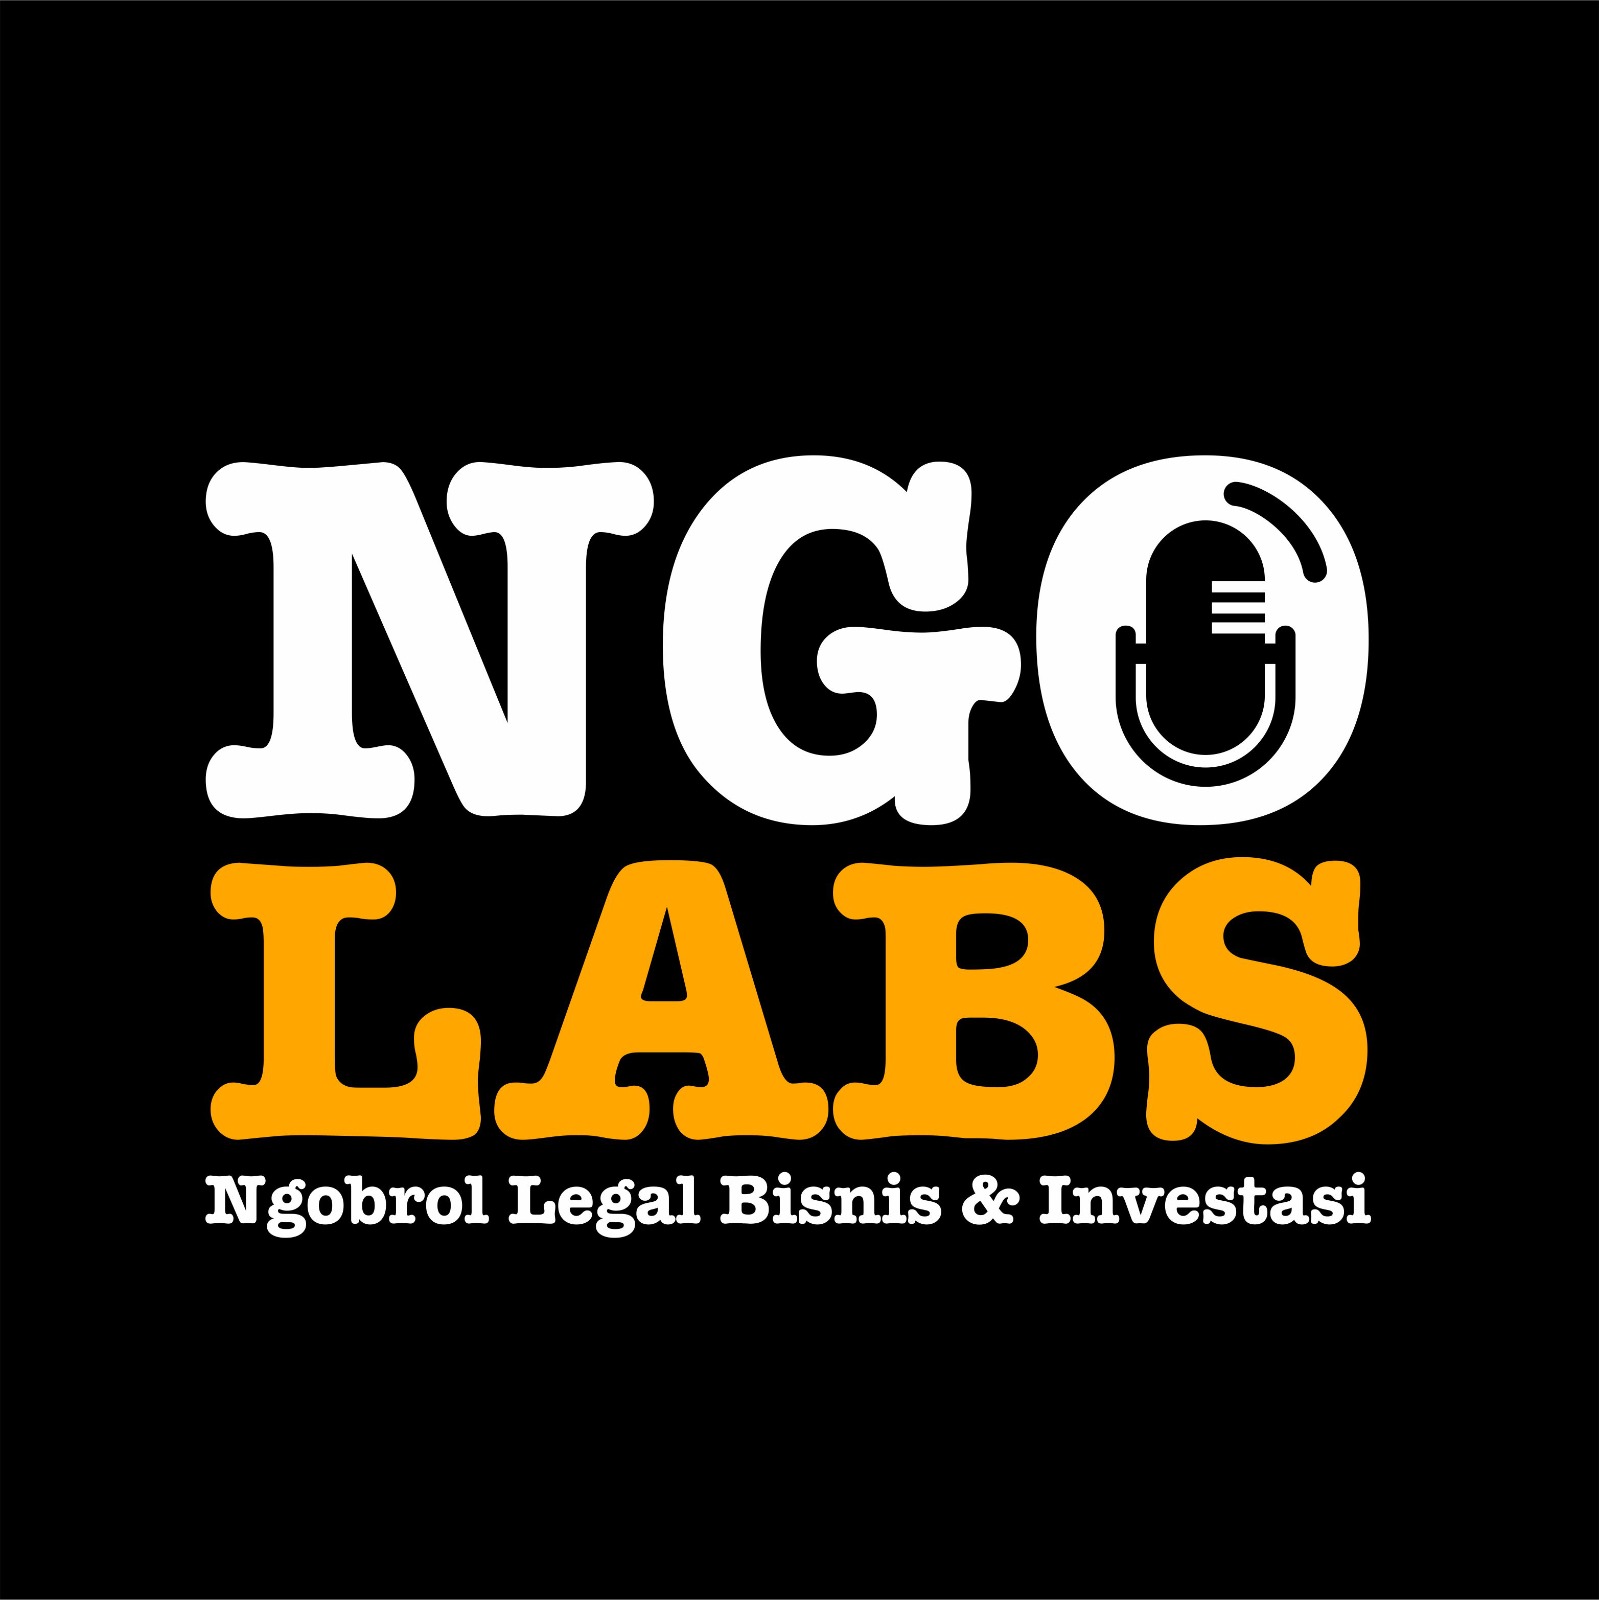 Ngolabs: Ngobrol Legal Bisnis dan Investasi